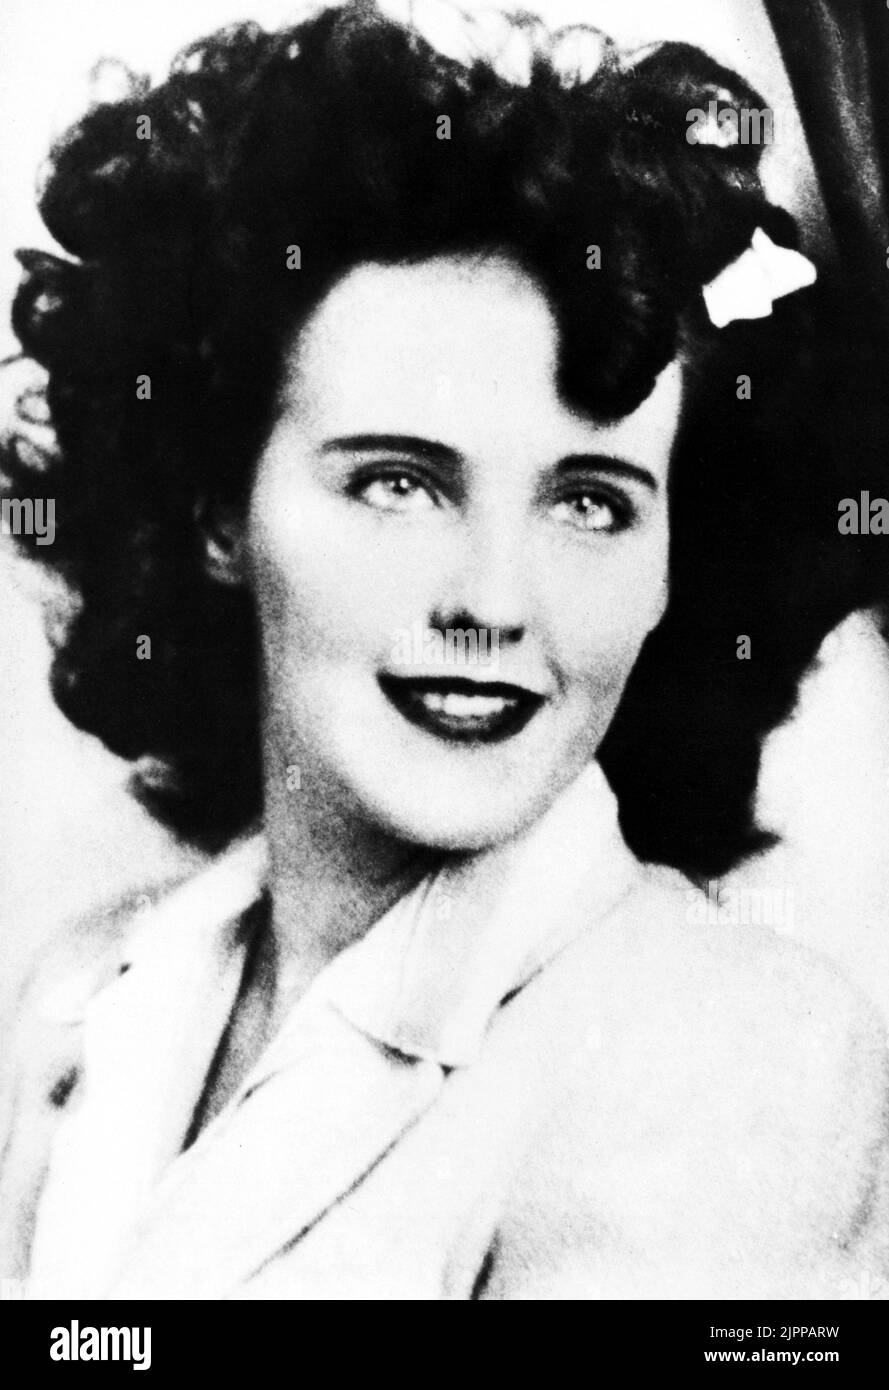 ELIZABETH KURZ alias The Black Dahlia ( 1924 - 1947 ). Die elizabeth-Leiche vom 15.. januar 1947 wurde in zwei Stücken auf einem freien Grundstück in Hollywood gefunden. Der Mord ist immer noch ungelöst - KINO - GEHEIMNIS - MISTERO - delitto insoluto - omicidio - CRONACA NERA - Smile - sorriso - Kult macabro ---- Archivio GBB Stockfoto